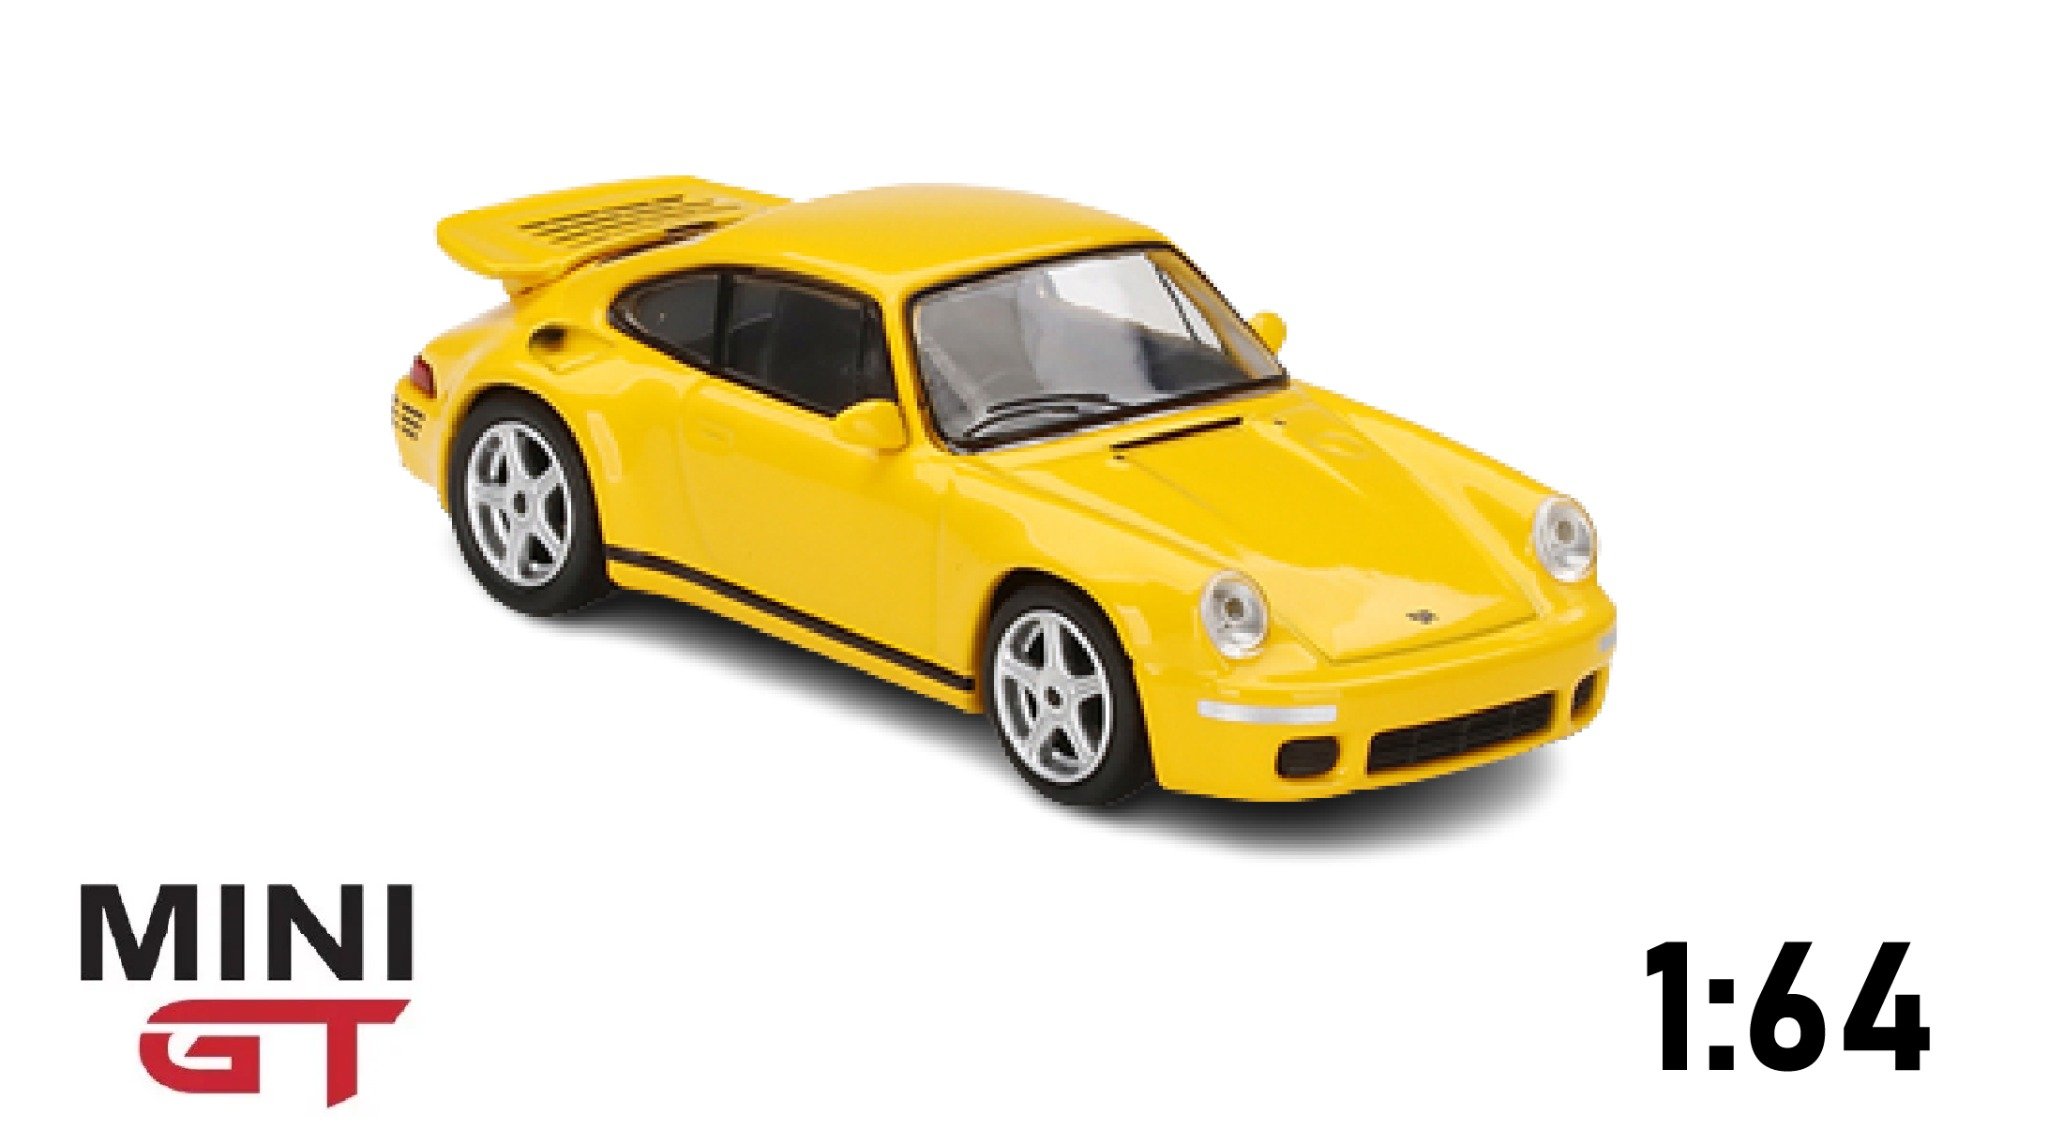  Mô hình xe Porsche RUF CTR Anniversary Blossom Yellow tỉ lệ 1:64 MiniGT 